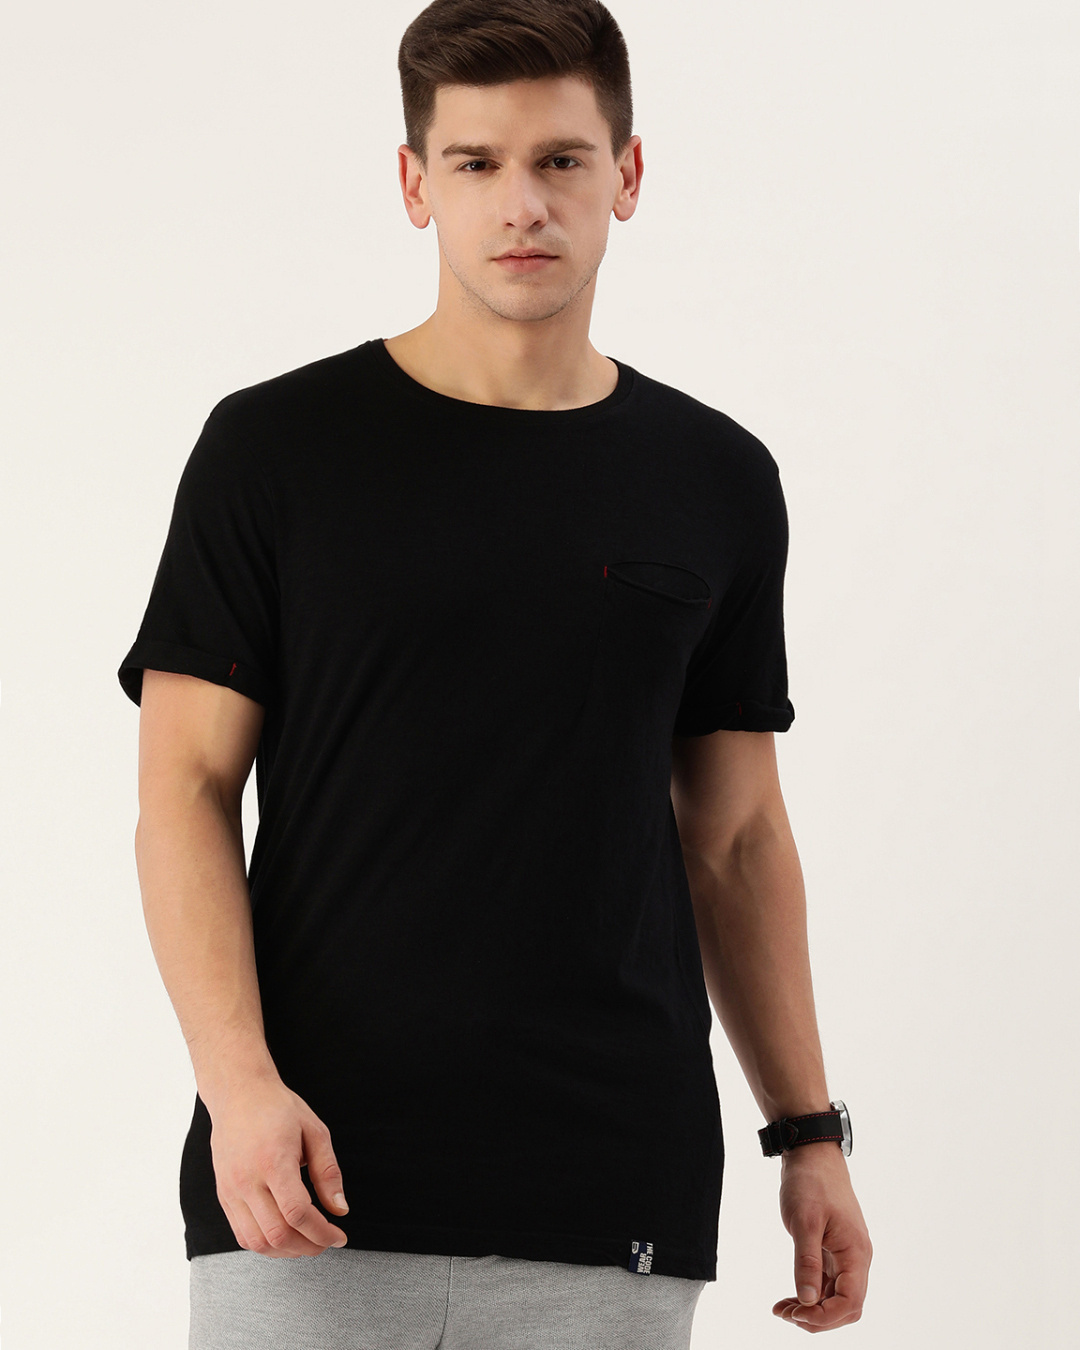 Buy Men's Black Cotton T-shirt Online at Bewakoof